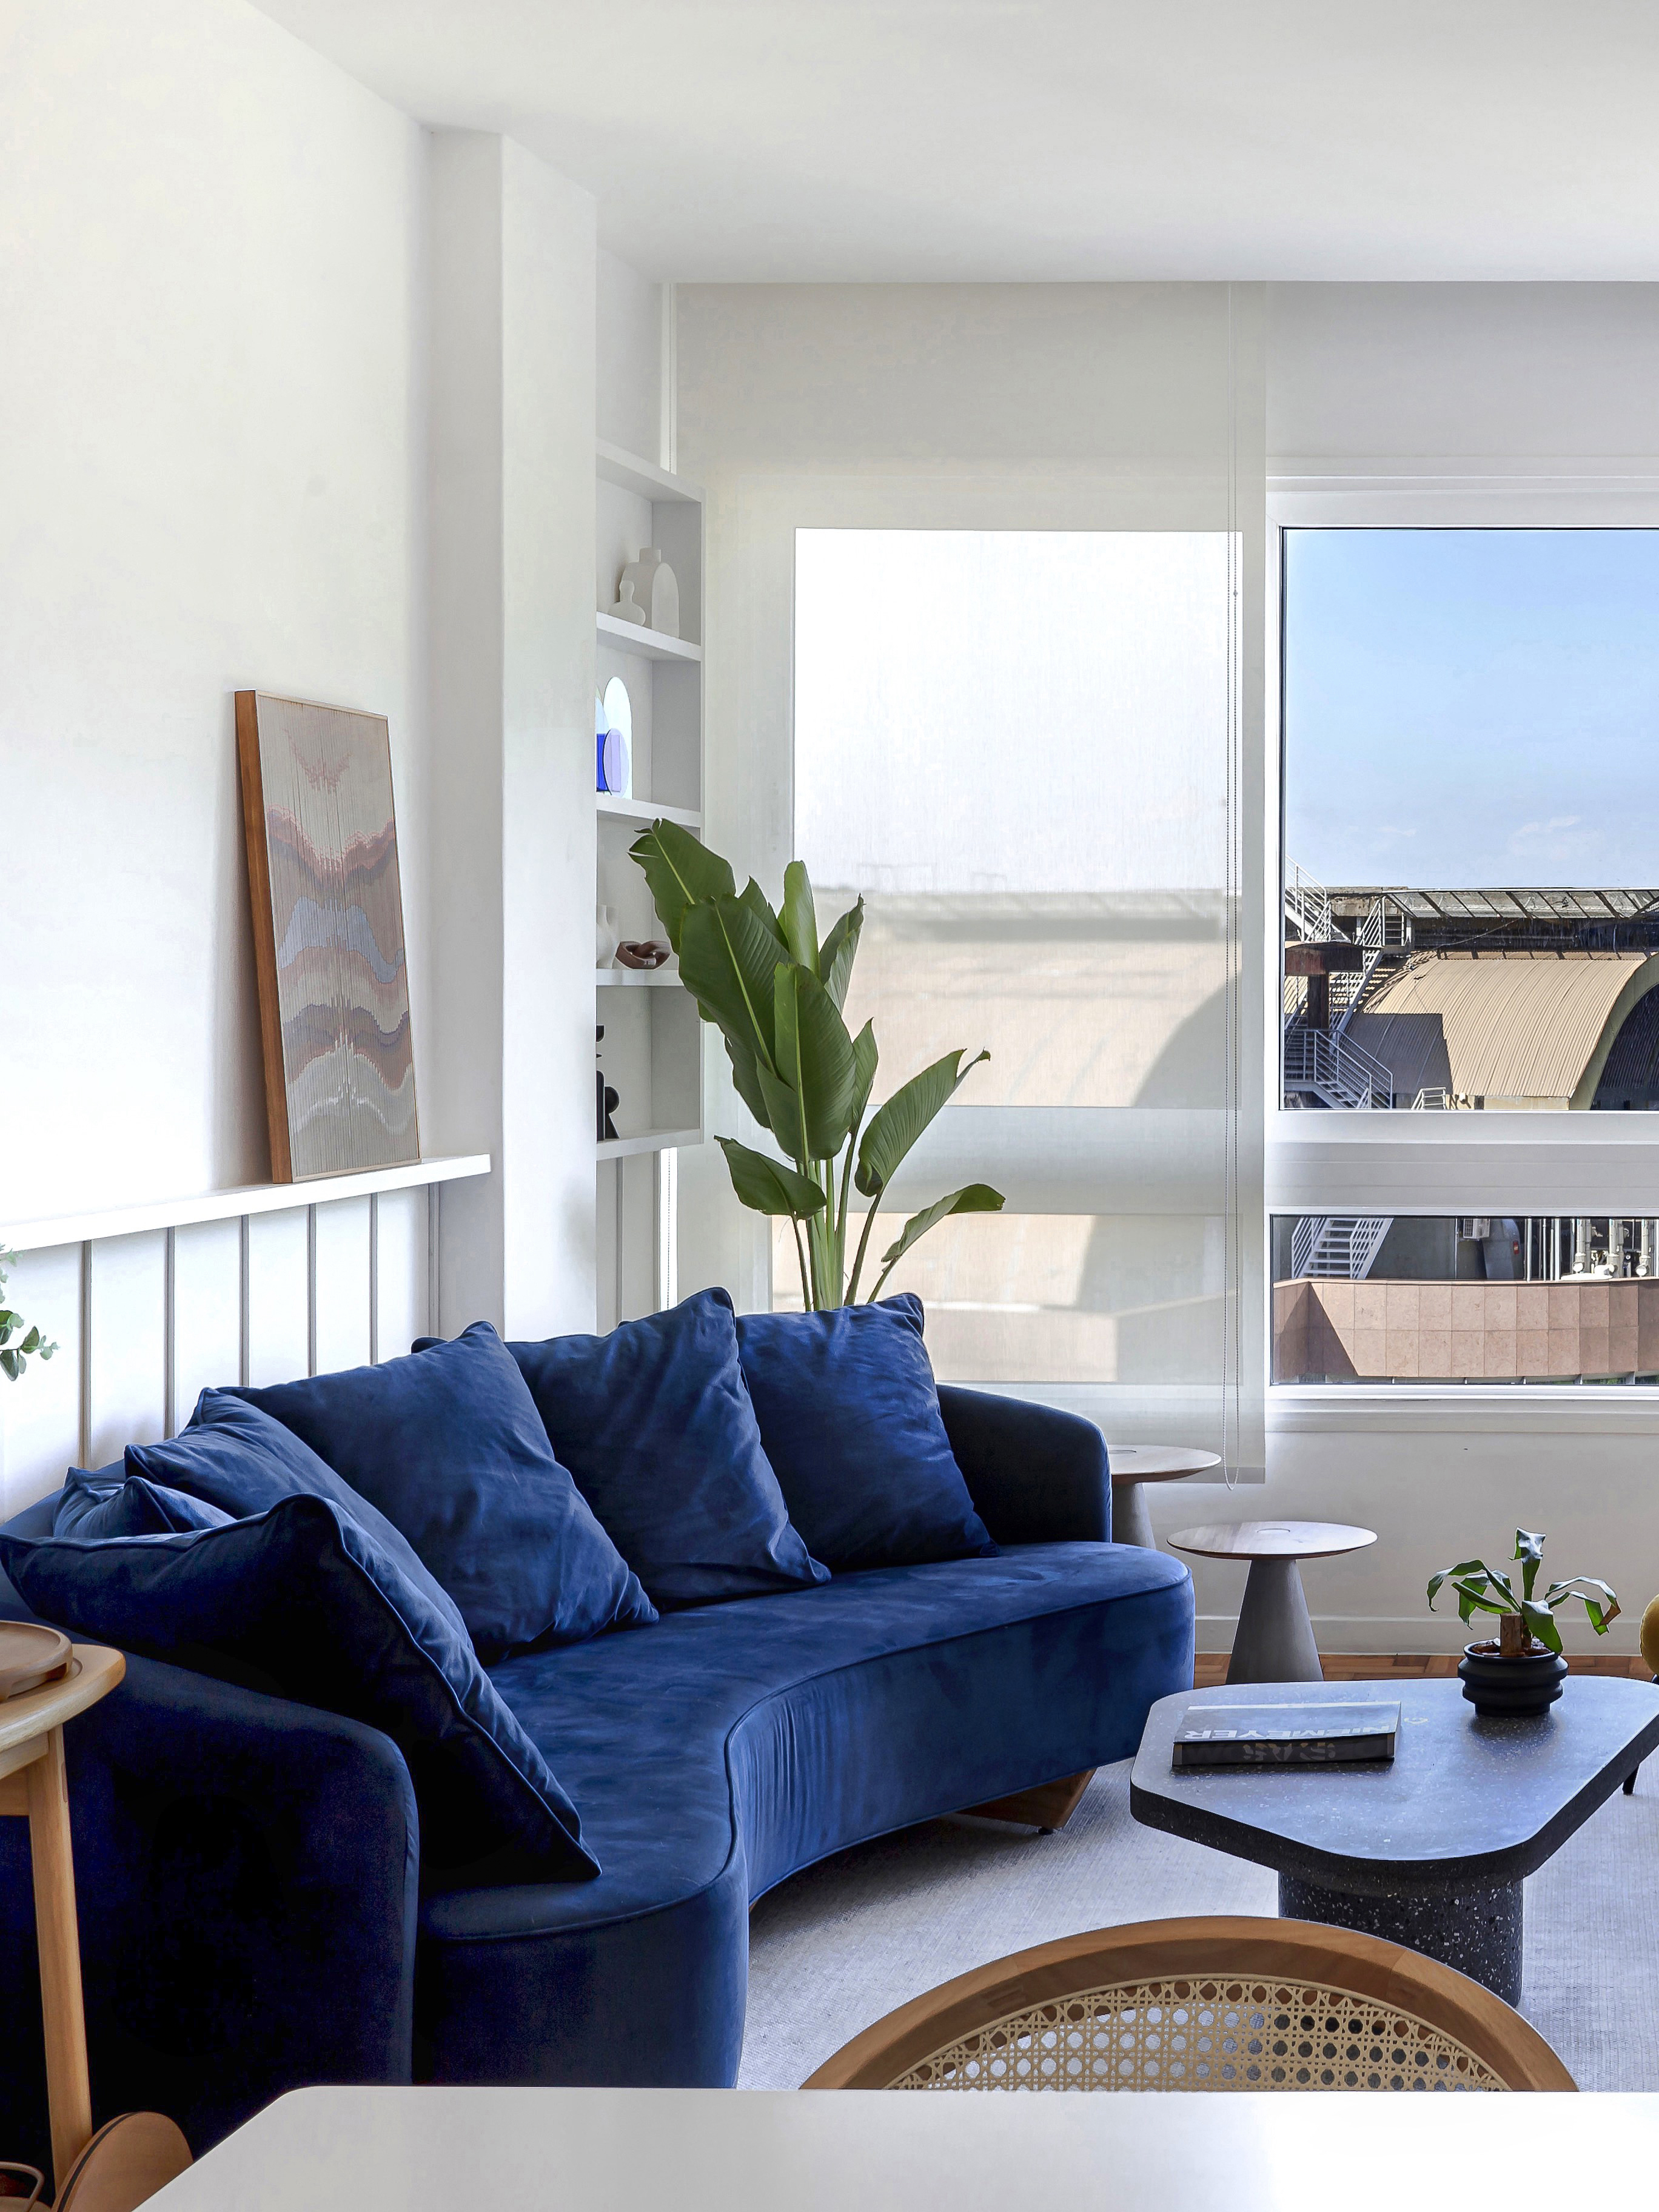 Sala de estar; sala de estar clara; sofá azul marinho; sofá curvo; boiserie; janela; mesa de centro